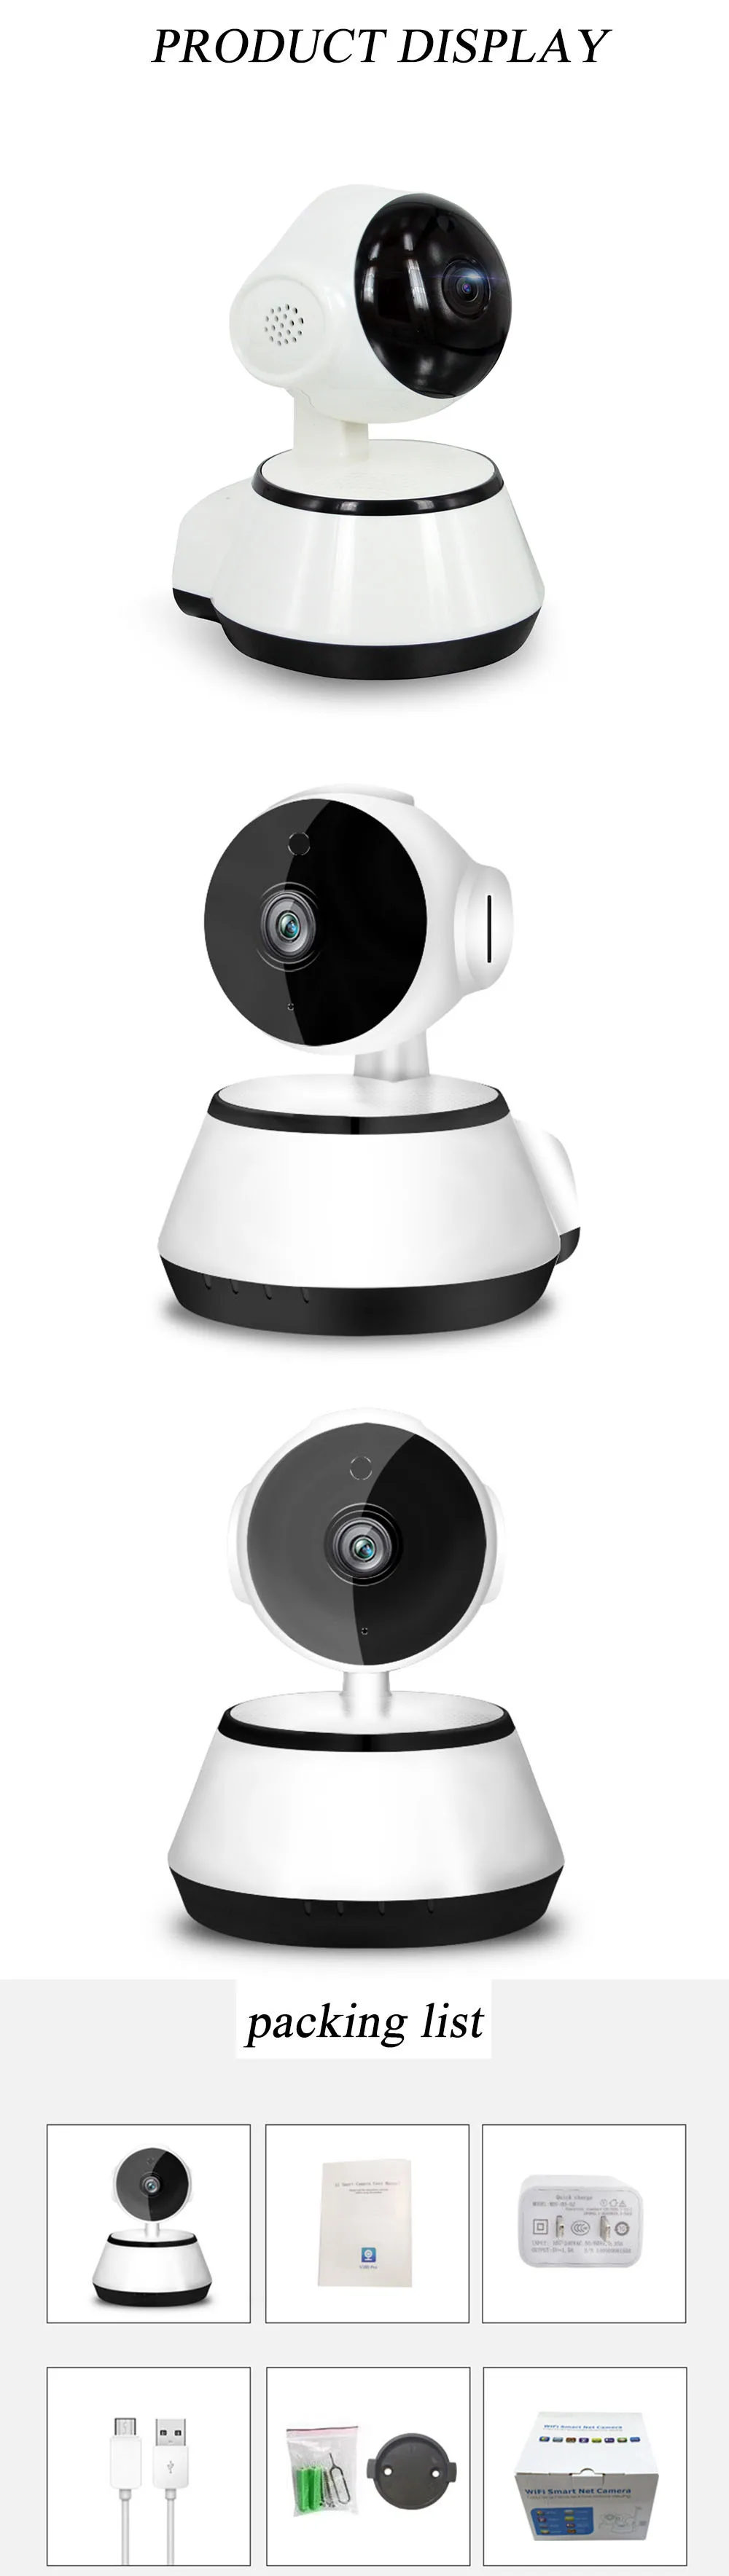 CCTV 1080P IP Камера домашнего видеонаблюдения камера с автоматическим отслеживанием сети WiFi Pan/Tilt Беспроводной Видеоняни и радионяни облако/SD магазин